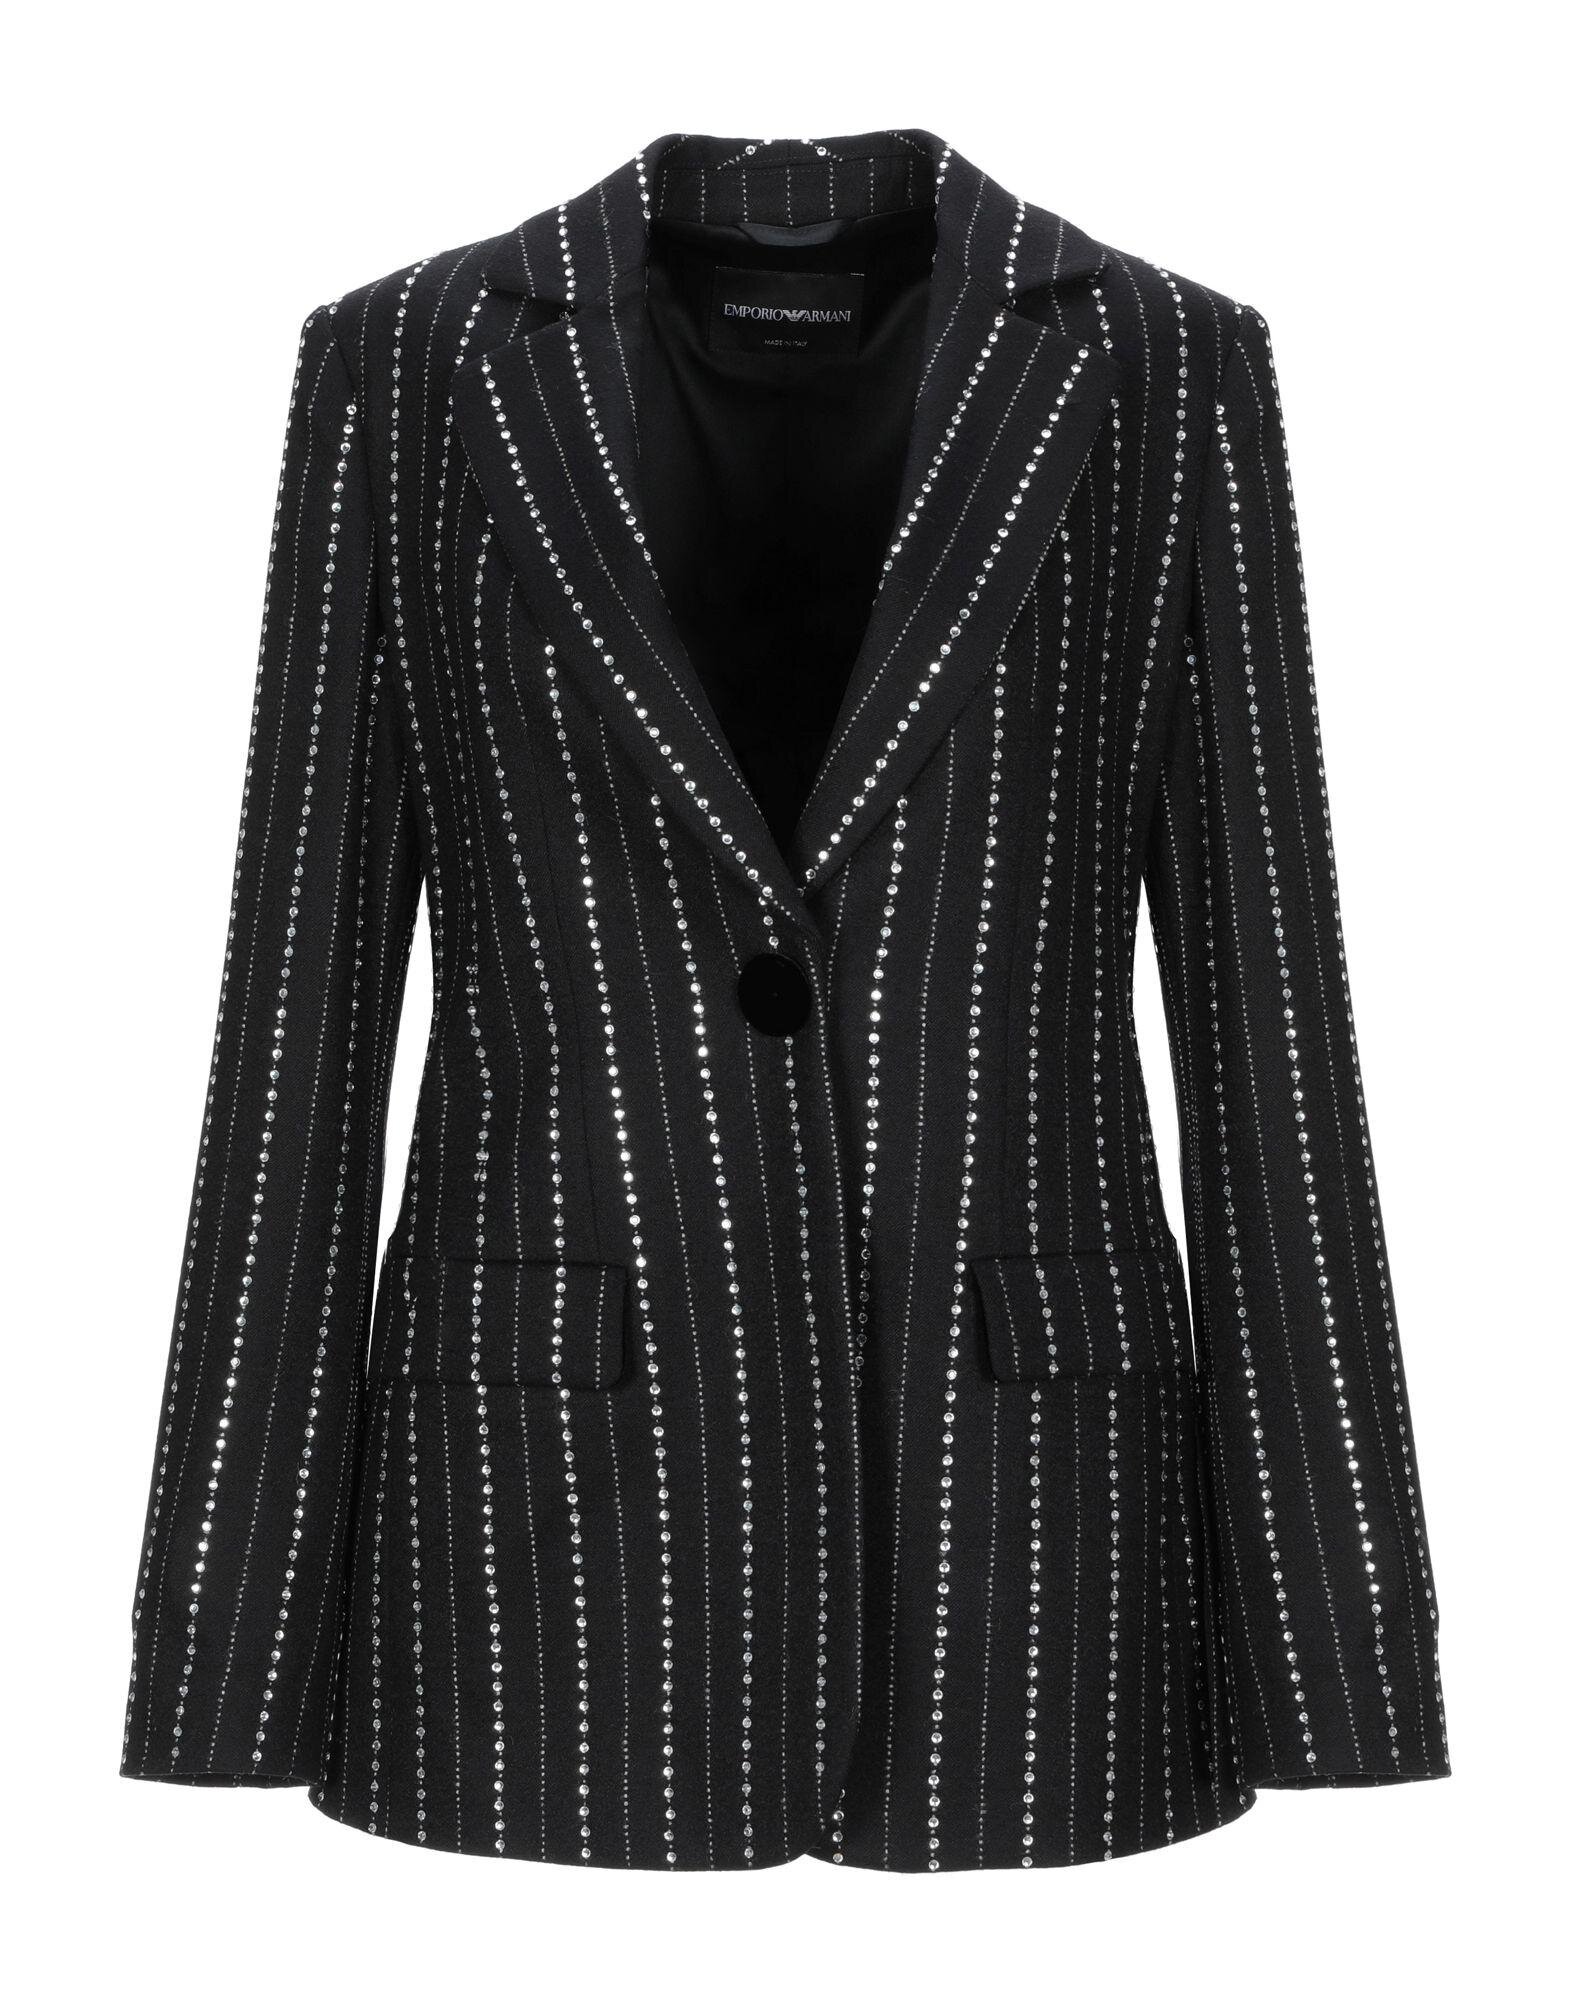 Emporio Armani Rhinestone-Embellished Jacket.jpg